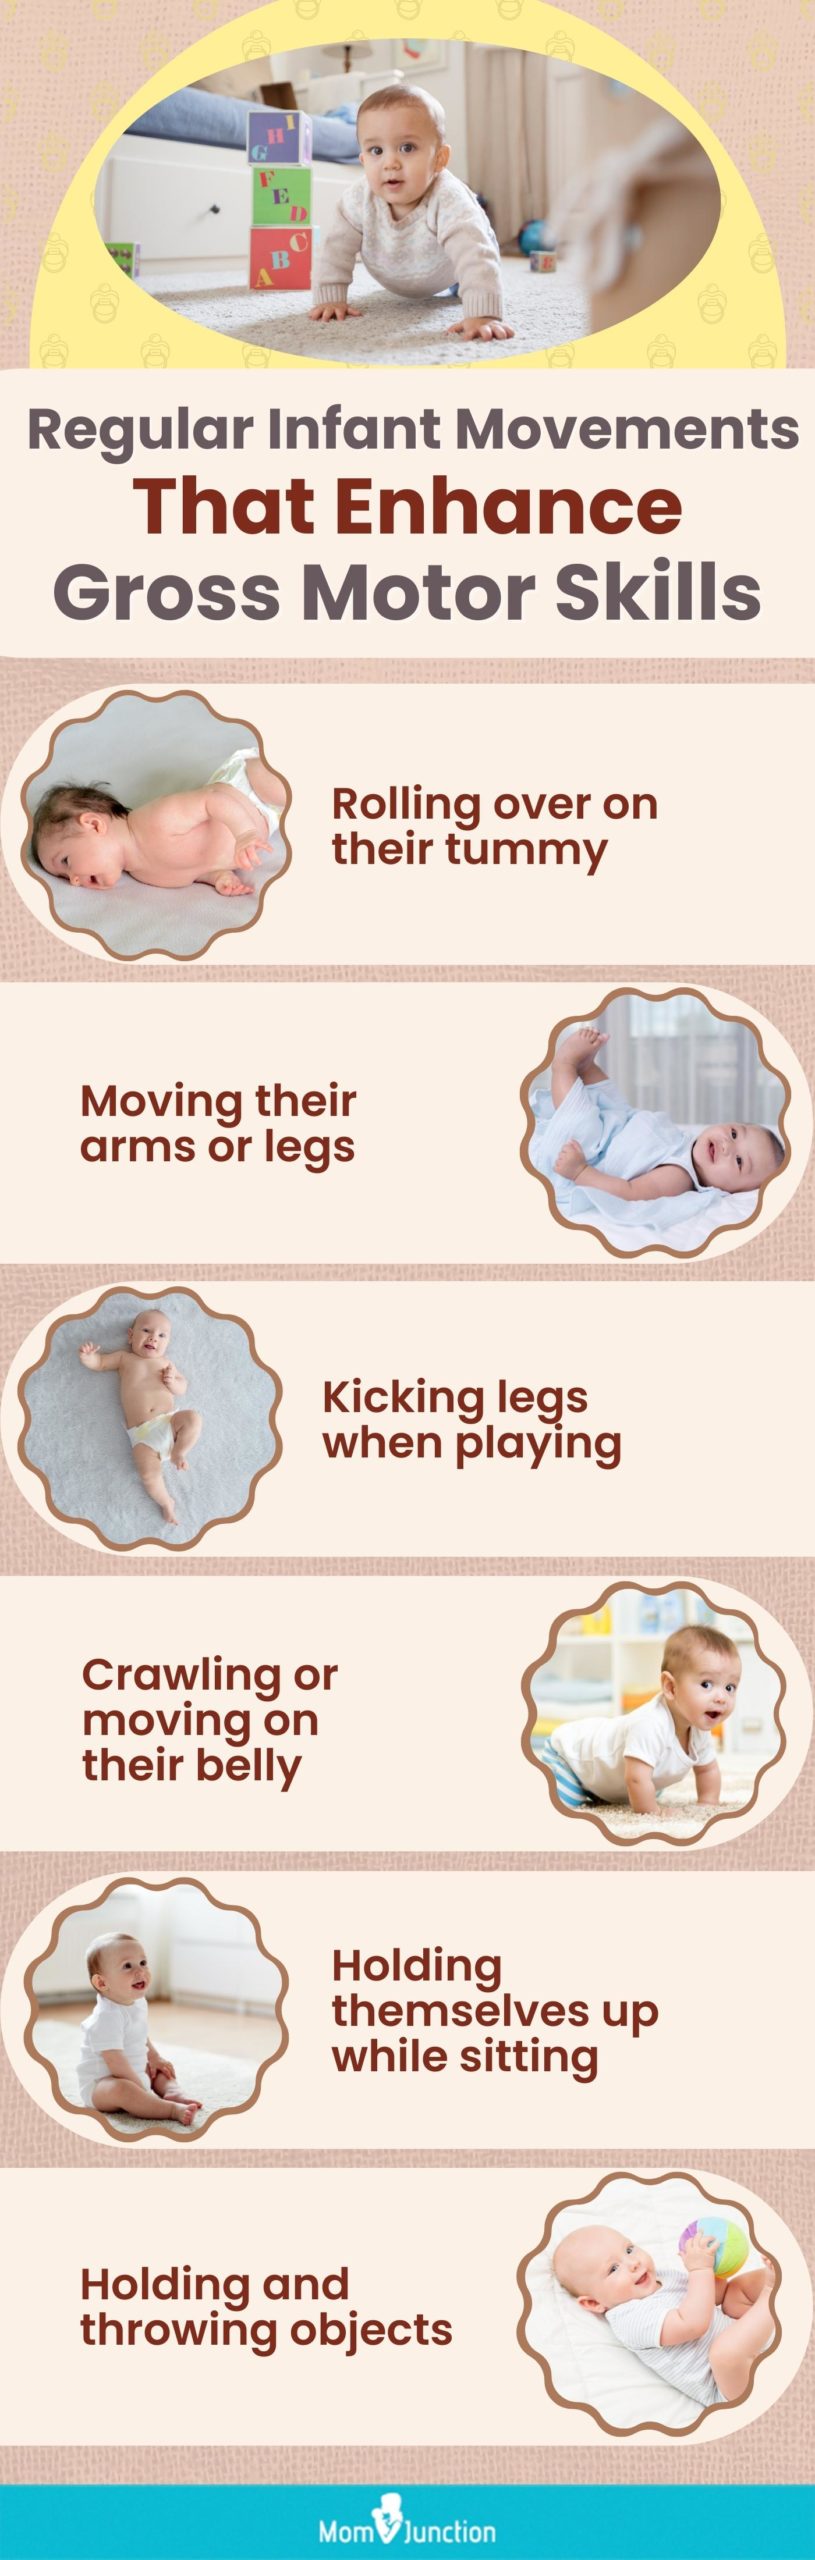 regular infant movements that enhance gross motor skills (infographic)